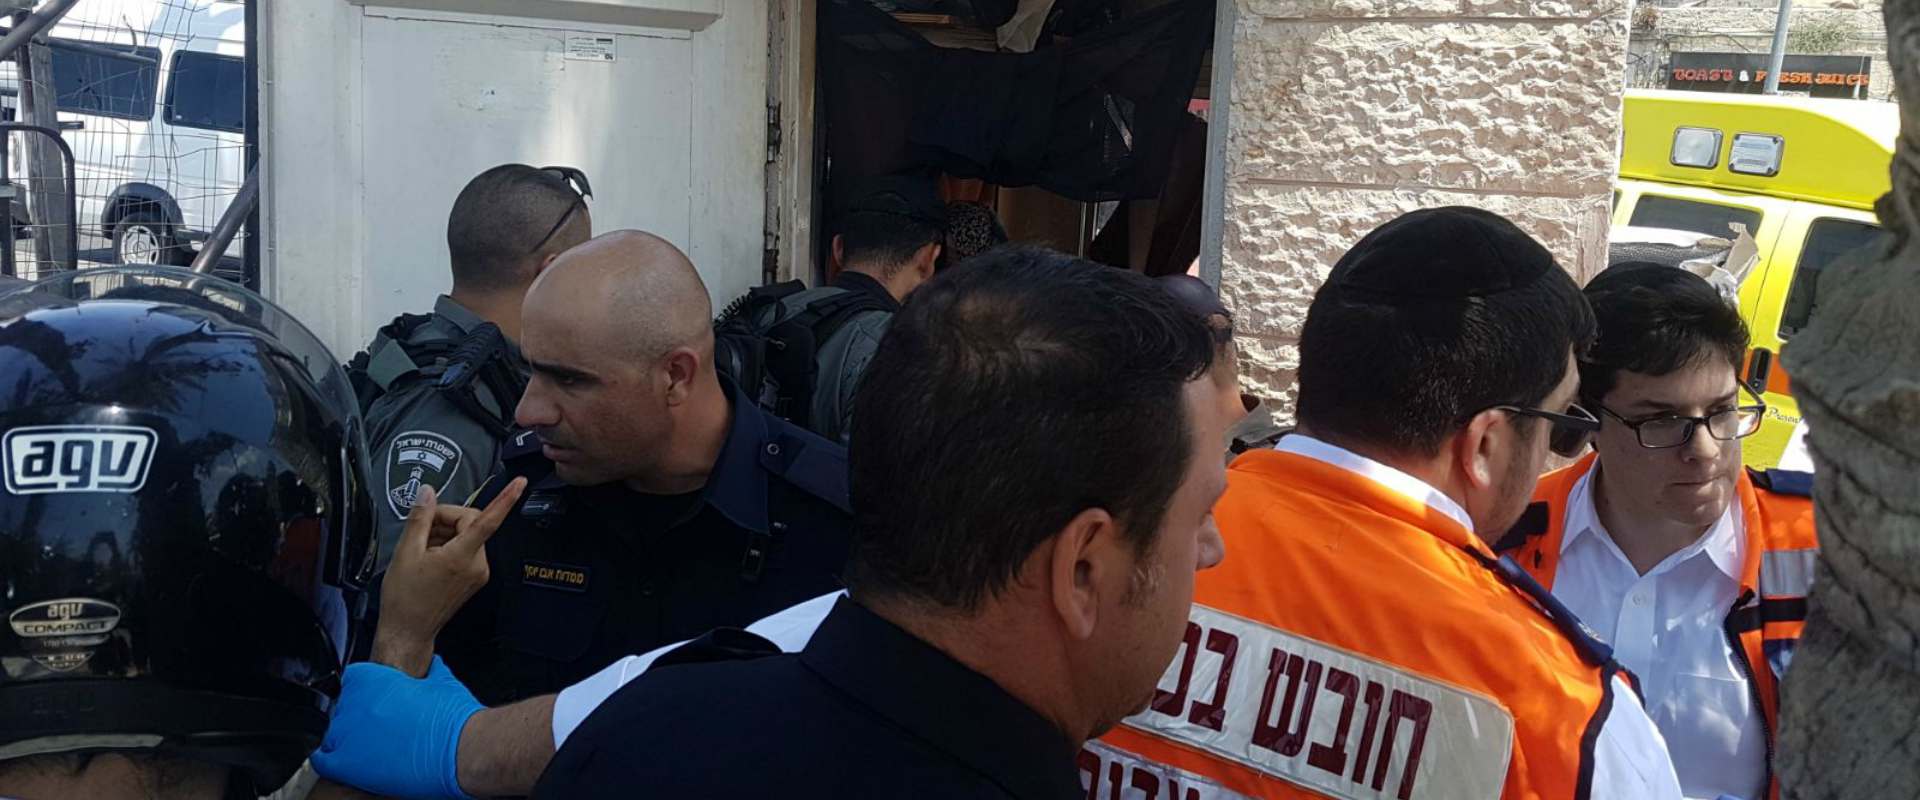 פיגוע דקירה בירושלים: אדם נפצע קל, המחבלת נעצרה | כאן